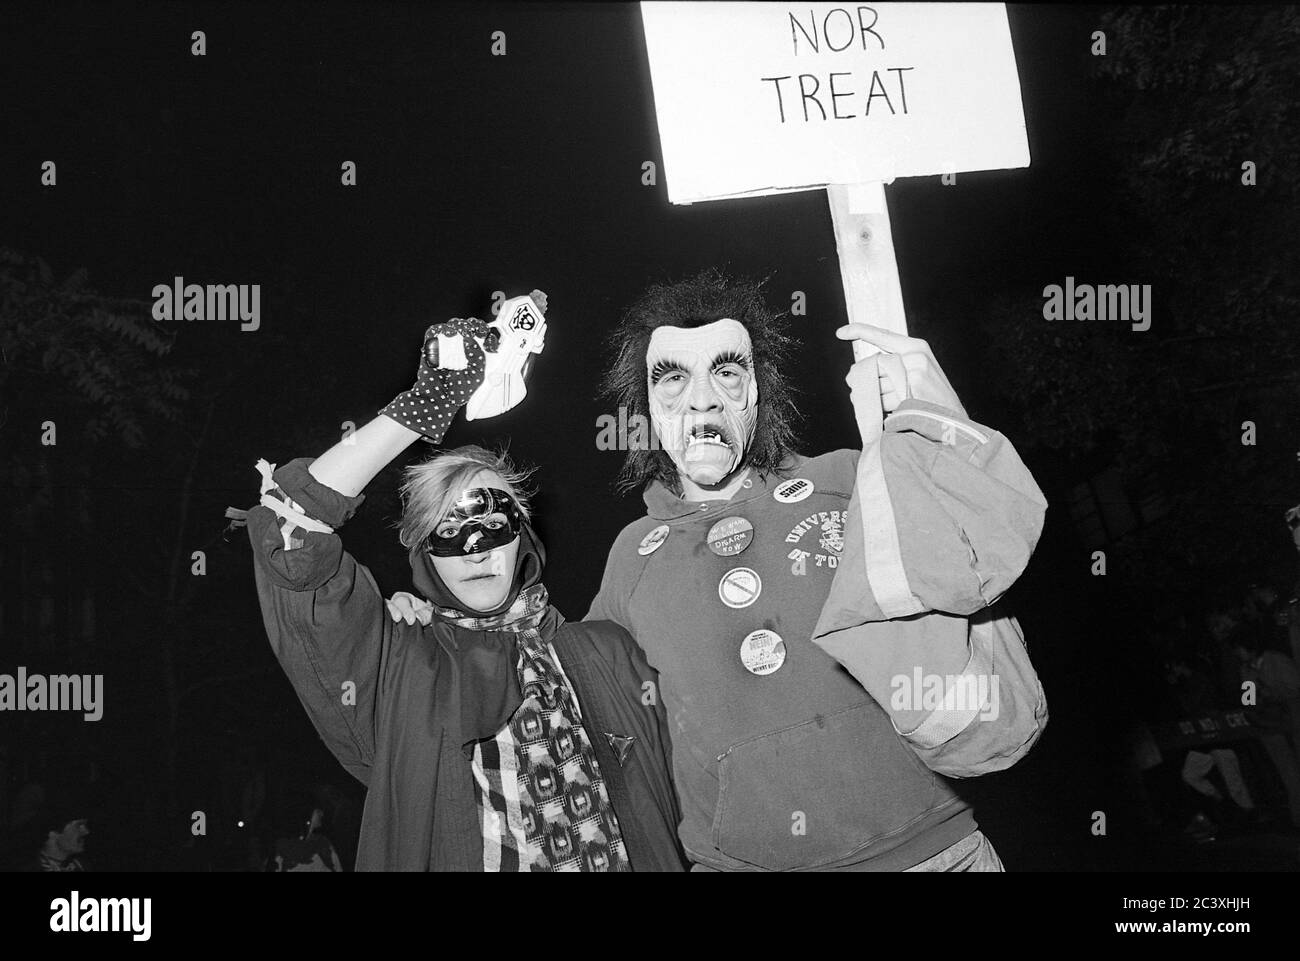 Coppia al Greenwich Village Halloween Parade in costume, New York City, USA negli anni '80 fotografata con film in bianco e nero di notte. Foto Stock